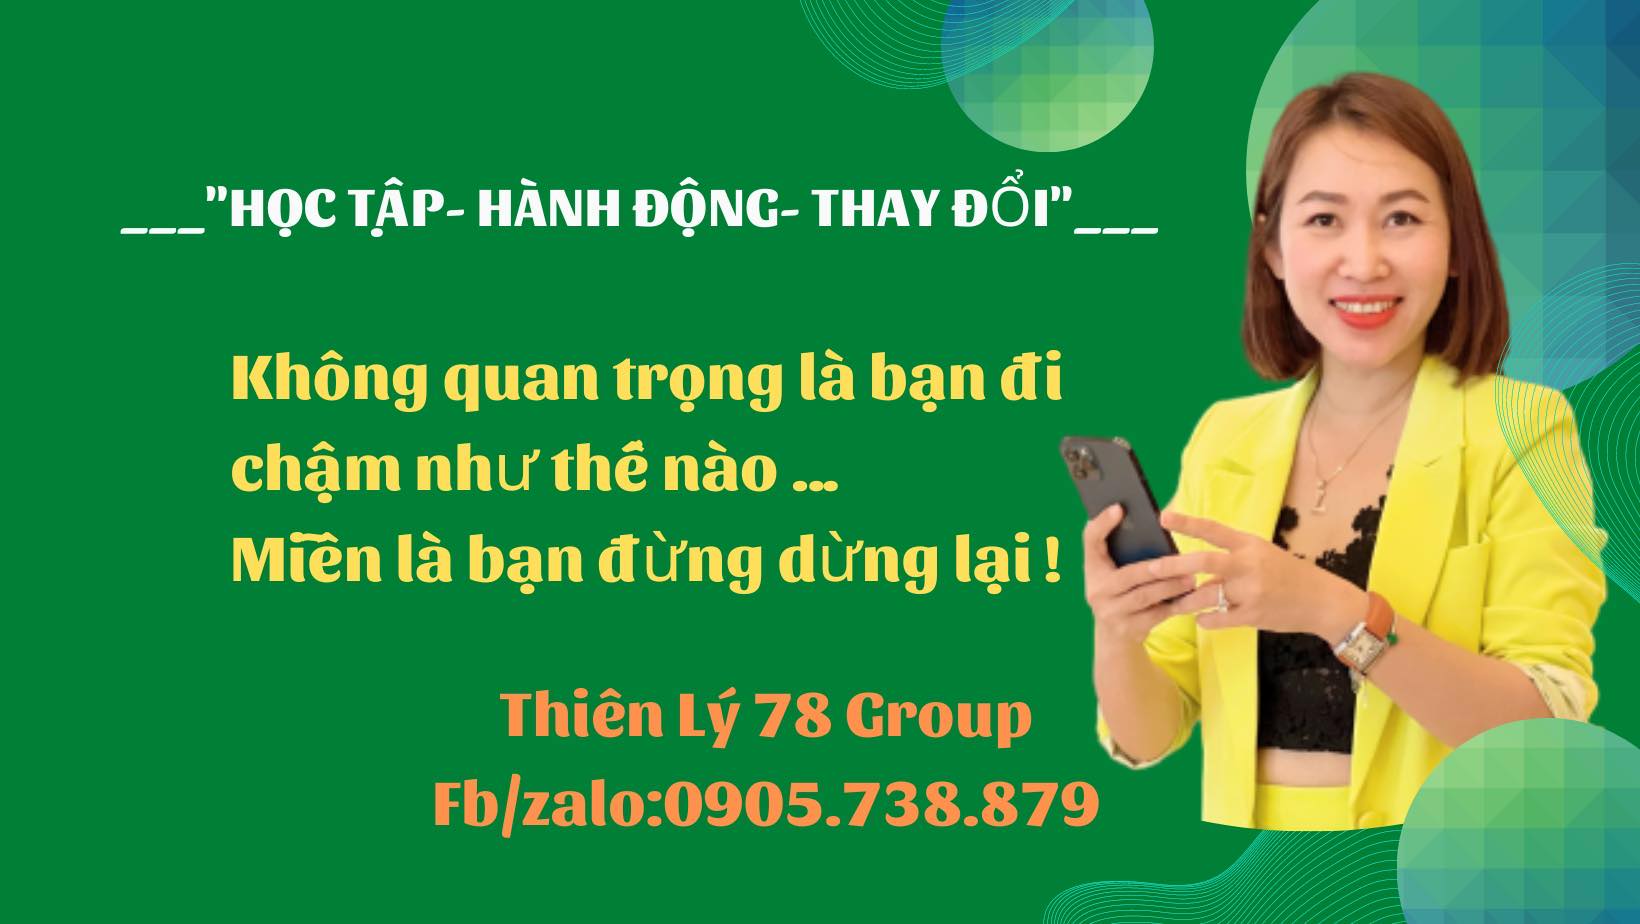 Thiên Lý 78 Group